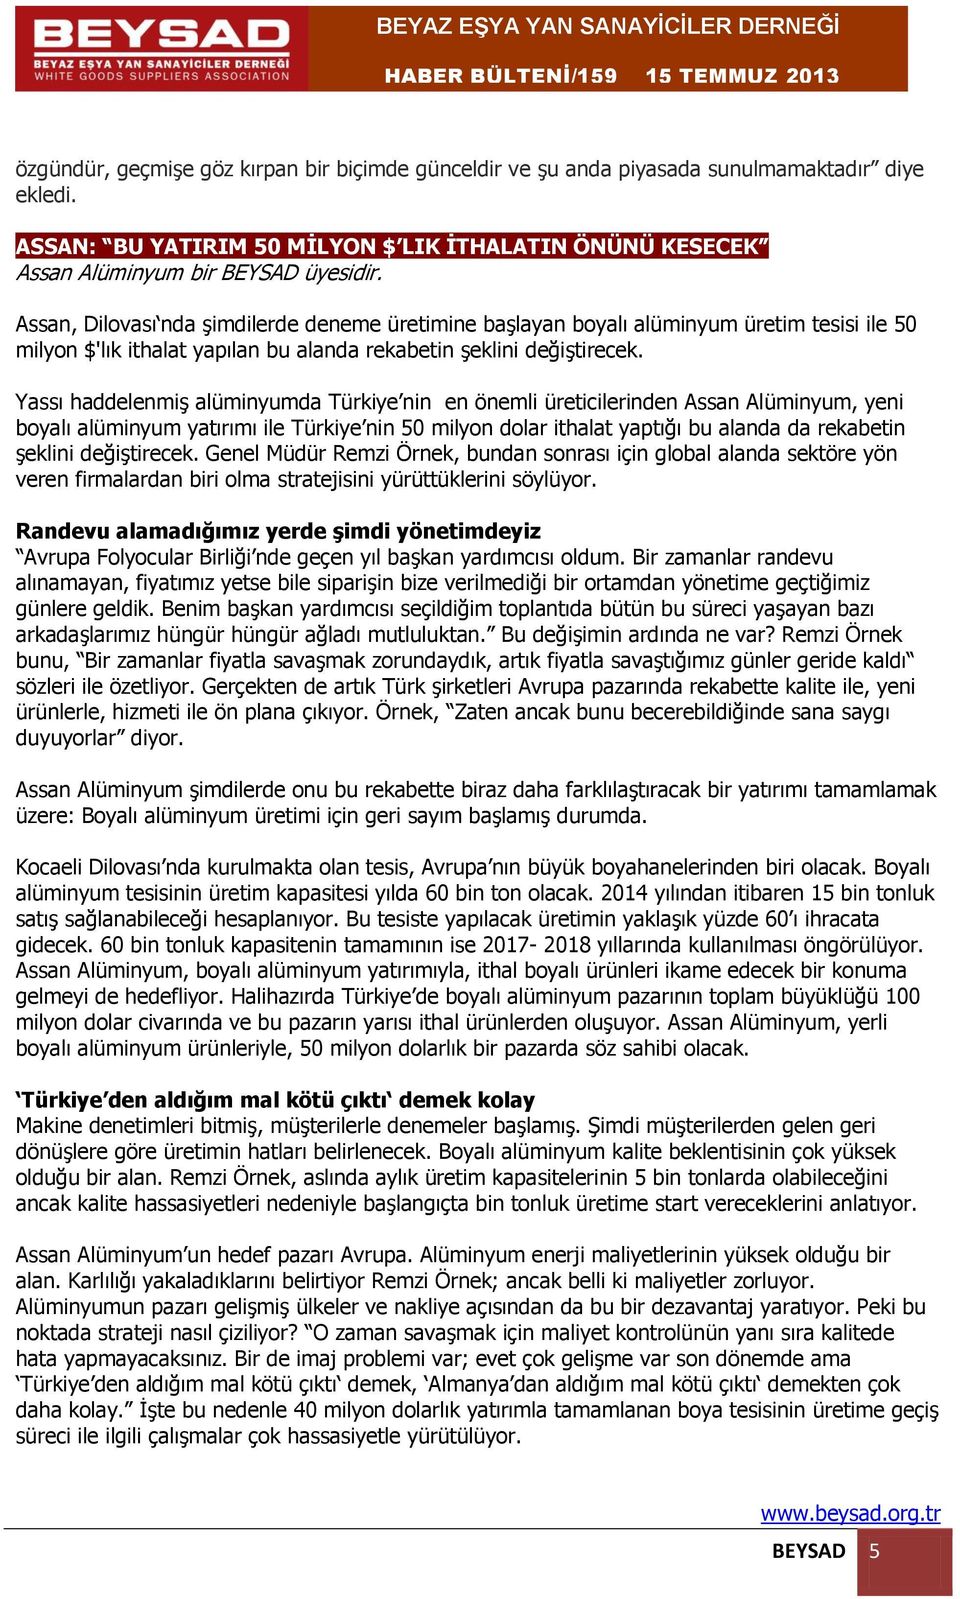 Yassı haddelenmiş alüminyumda Türkiye nin en önemli üreticilerinden Assan Alüminyum, yeni boyalı alüminyum yatırımı ile Türkiye nin 50 milyon dolar ithalat yaptığı bu alanda da rekabetin şeklini